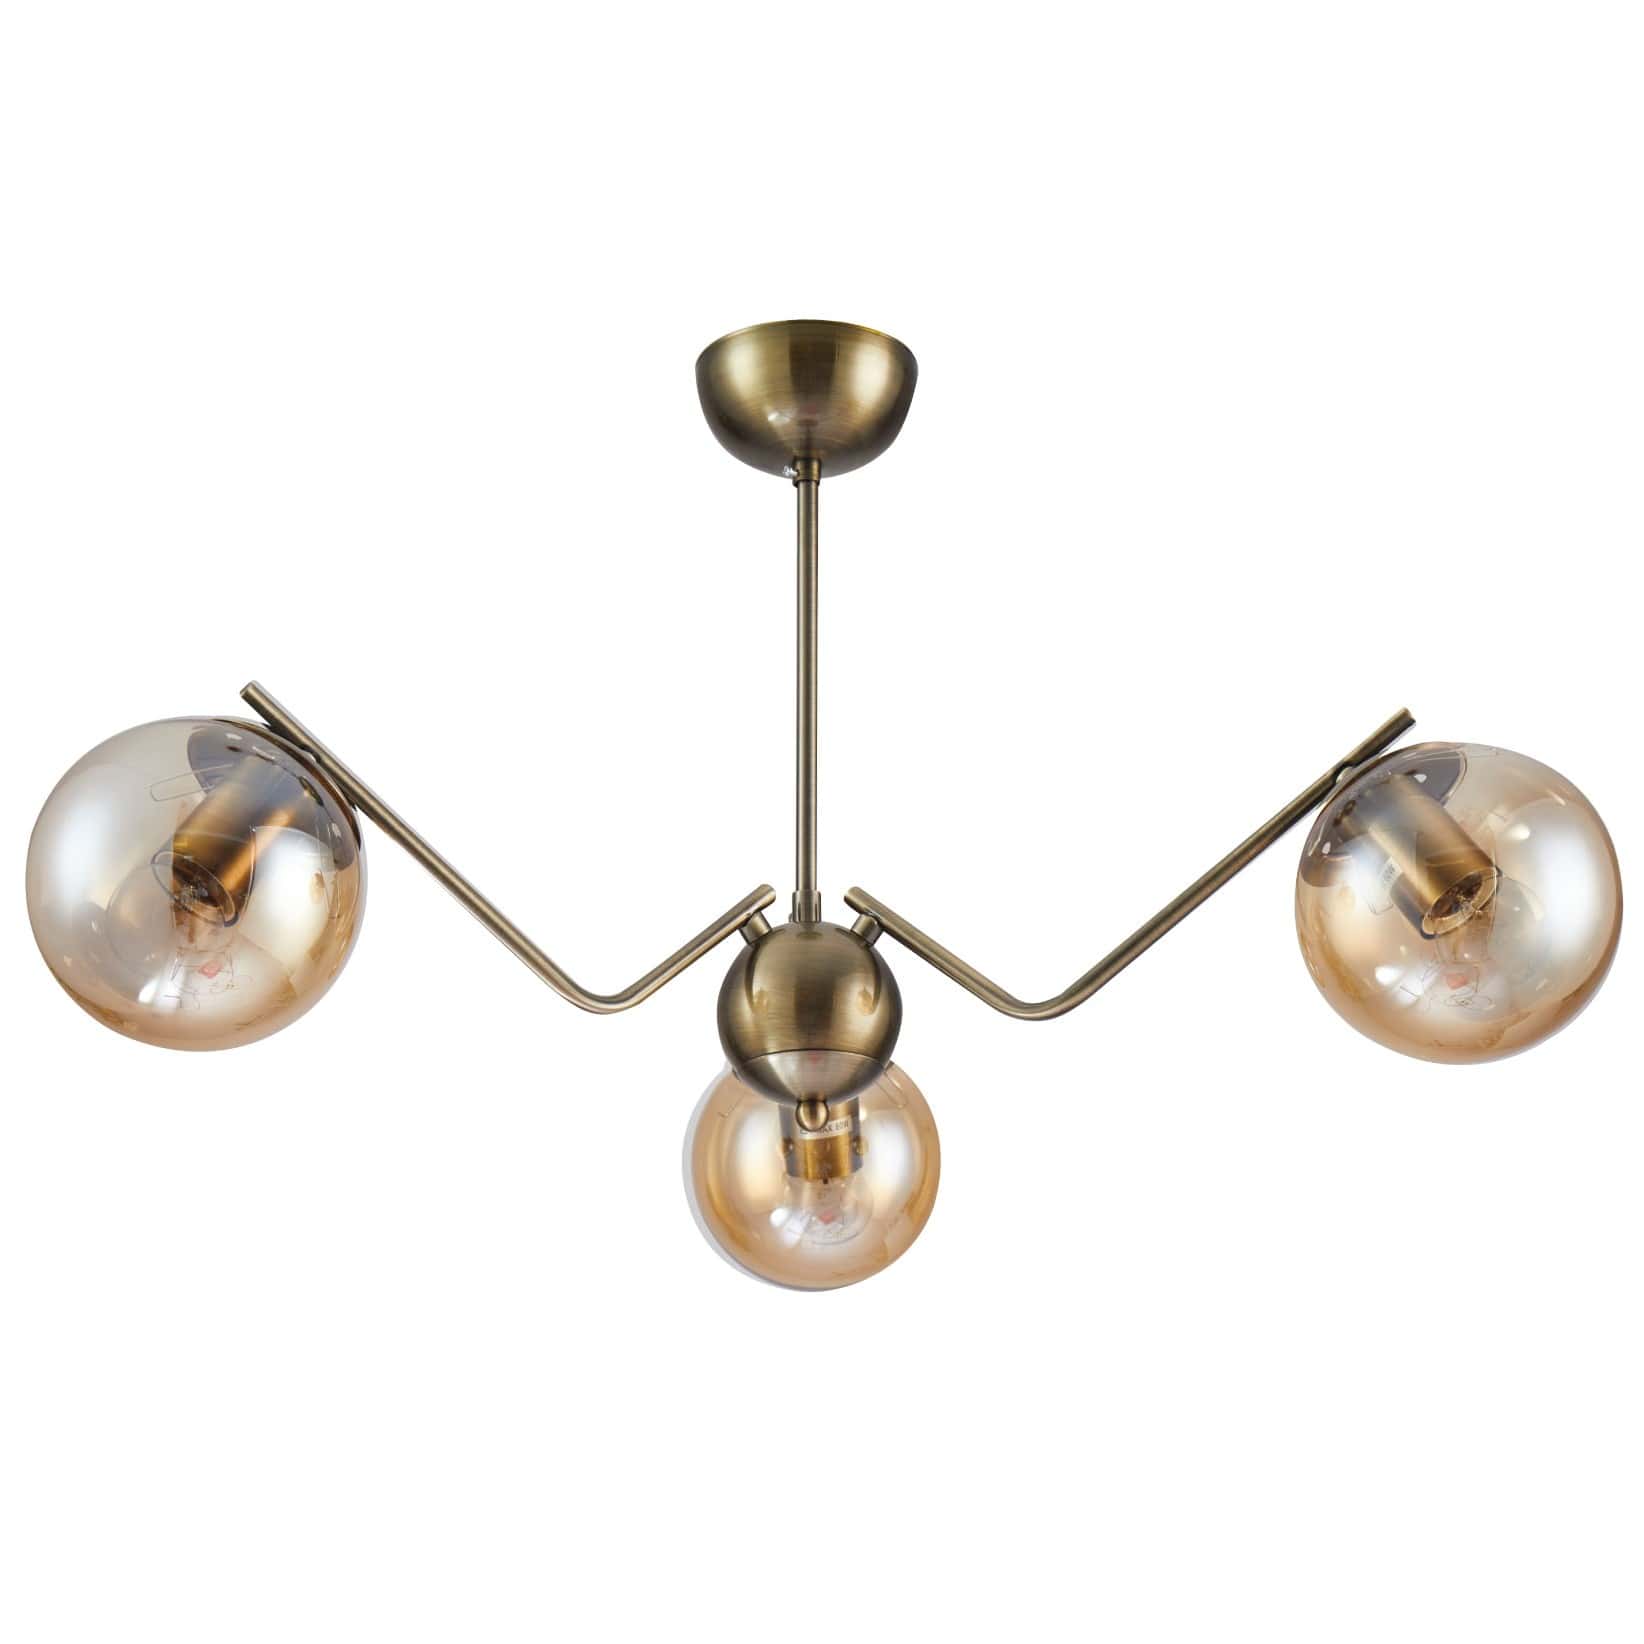 Main image of Amber Globe Glass Antique Brass Metal Spider Semi Flush Ceiling Light | TEKLED 159-17188